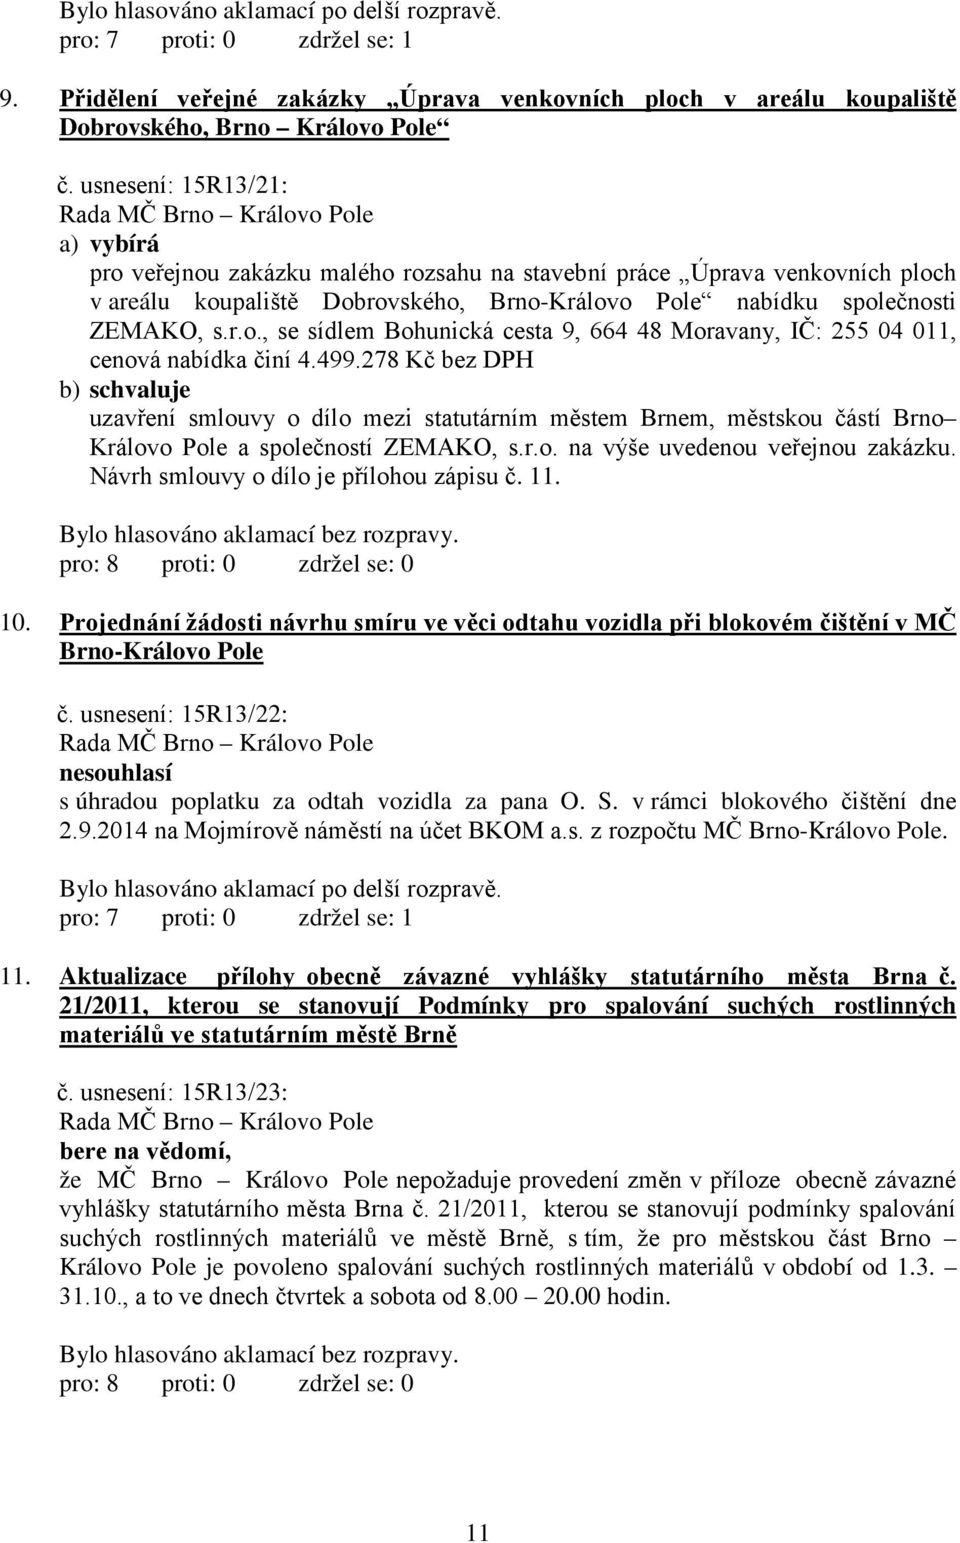 499.278 Kč bez DPH uzavření smlouvy o dílo mezi statutárním městem Brnem, městskou částí Brno Královo Pole a společností ZEMAKO, s.r.o. na výše uvedenou veřejnou zakázku.